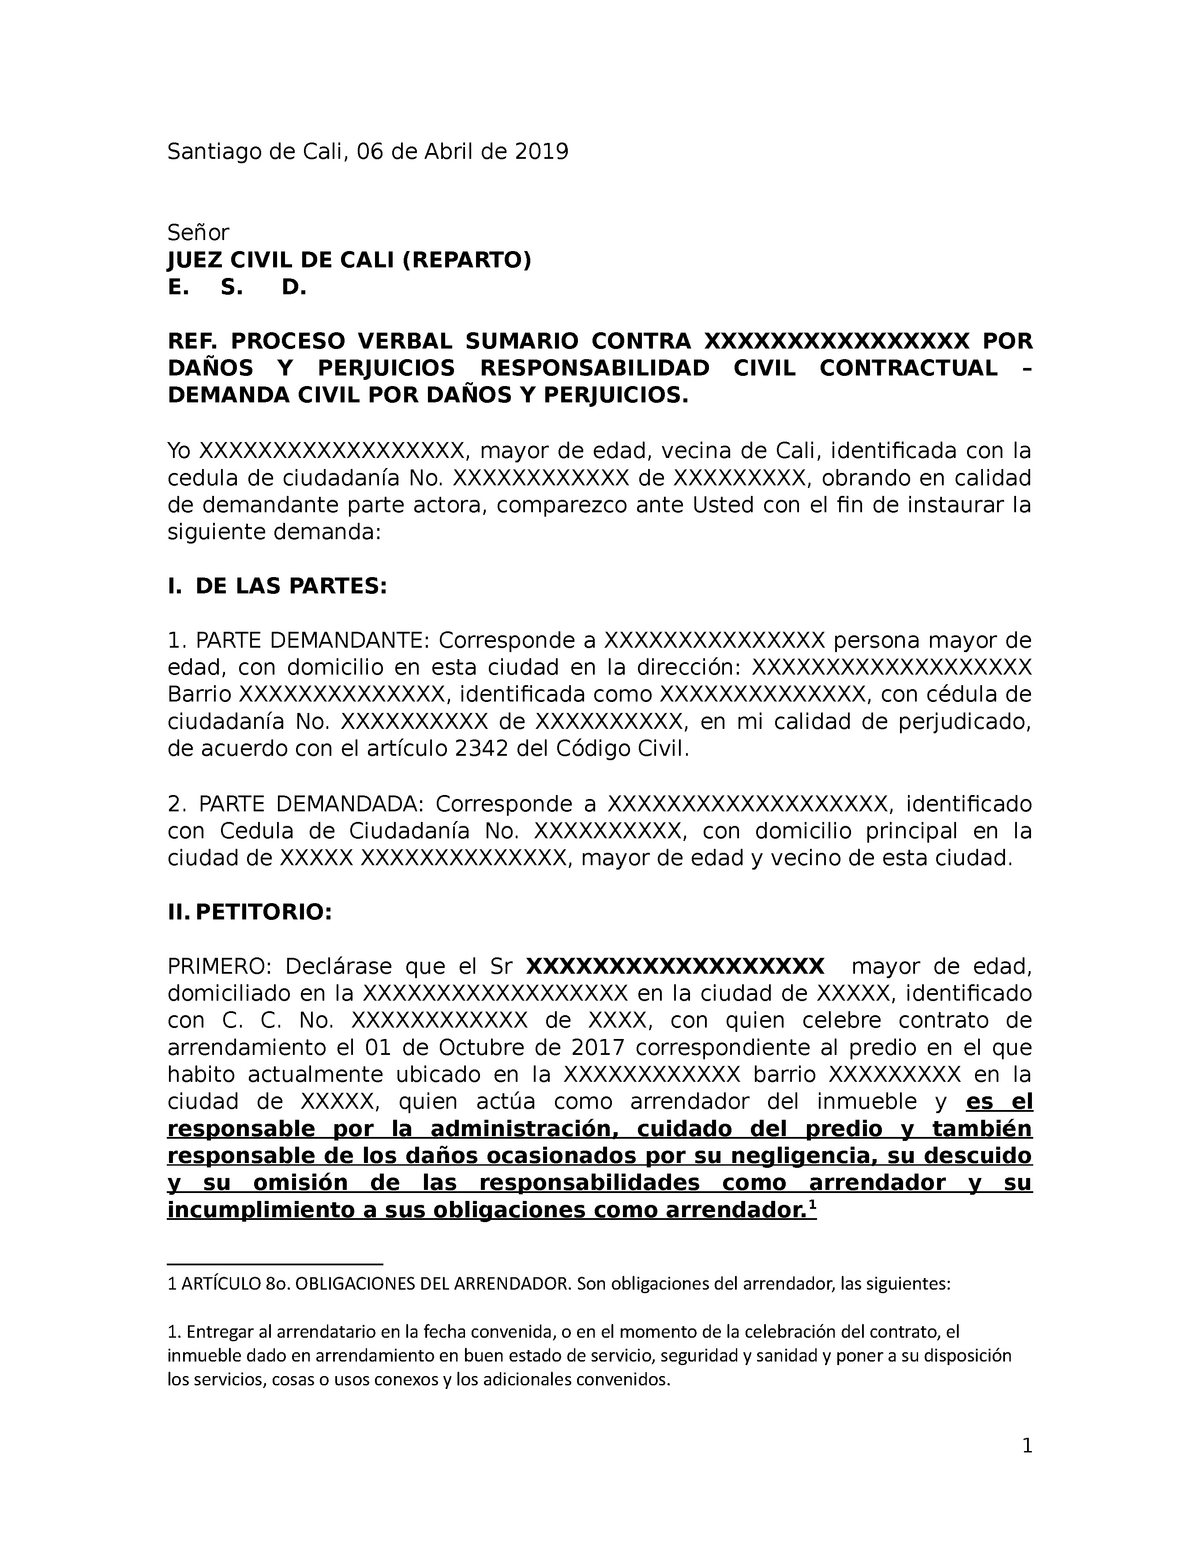 Demanda Judicial Por Danos Y Perjuicios Contrato De Arrendamiento Santiago De Cali 06 De 6578